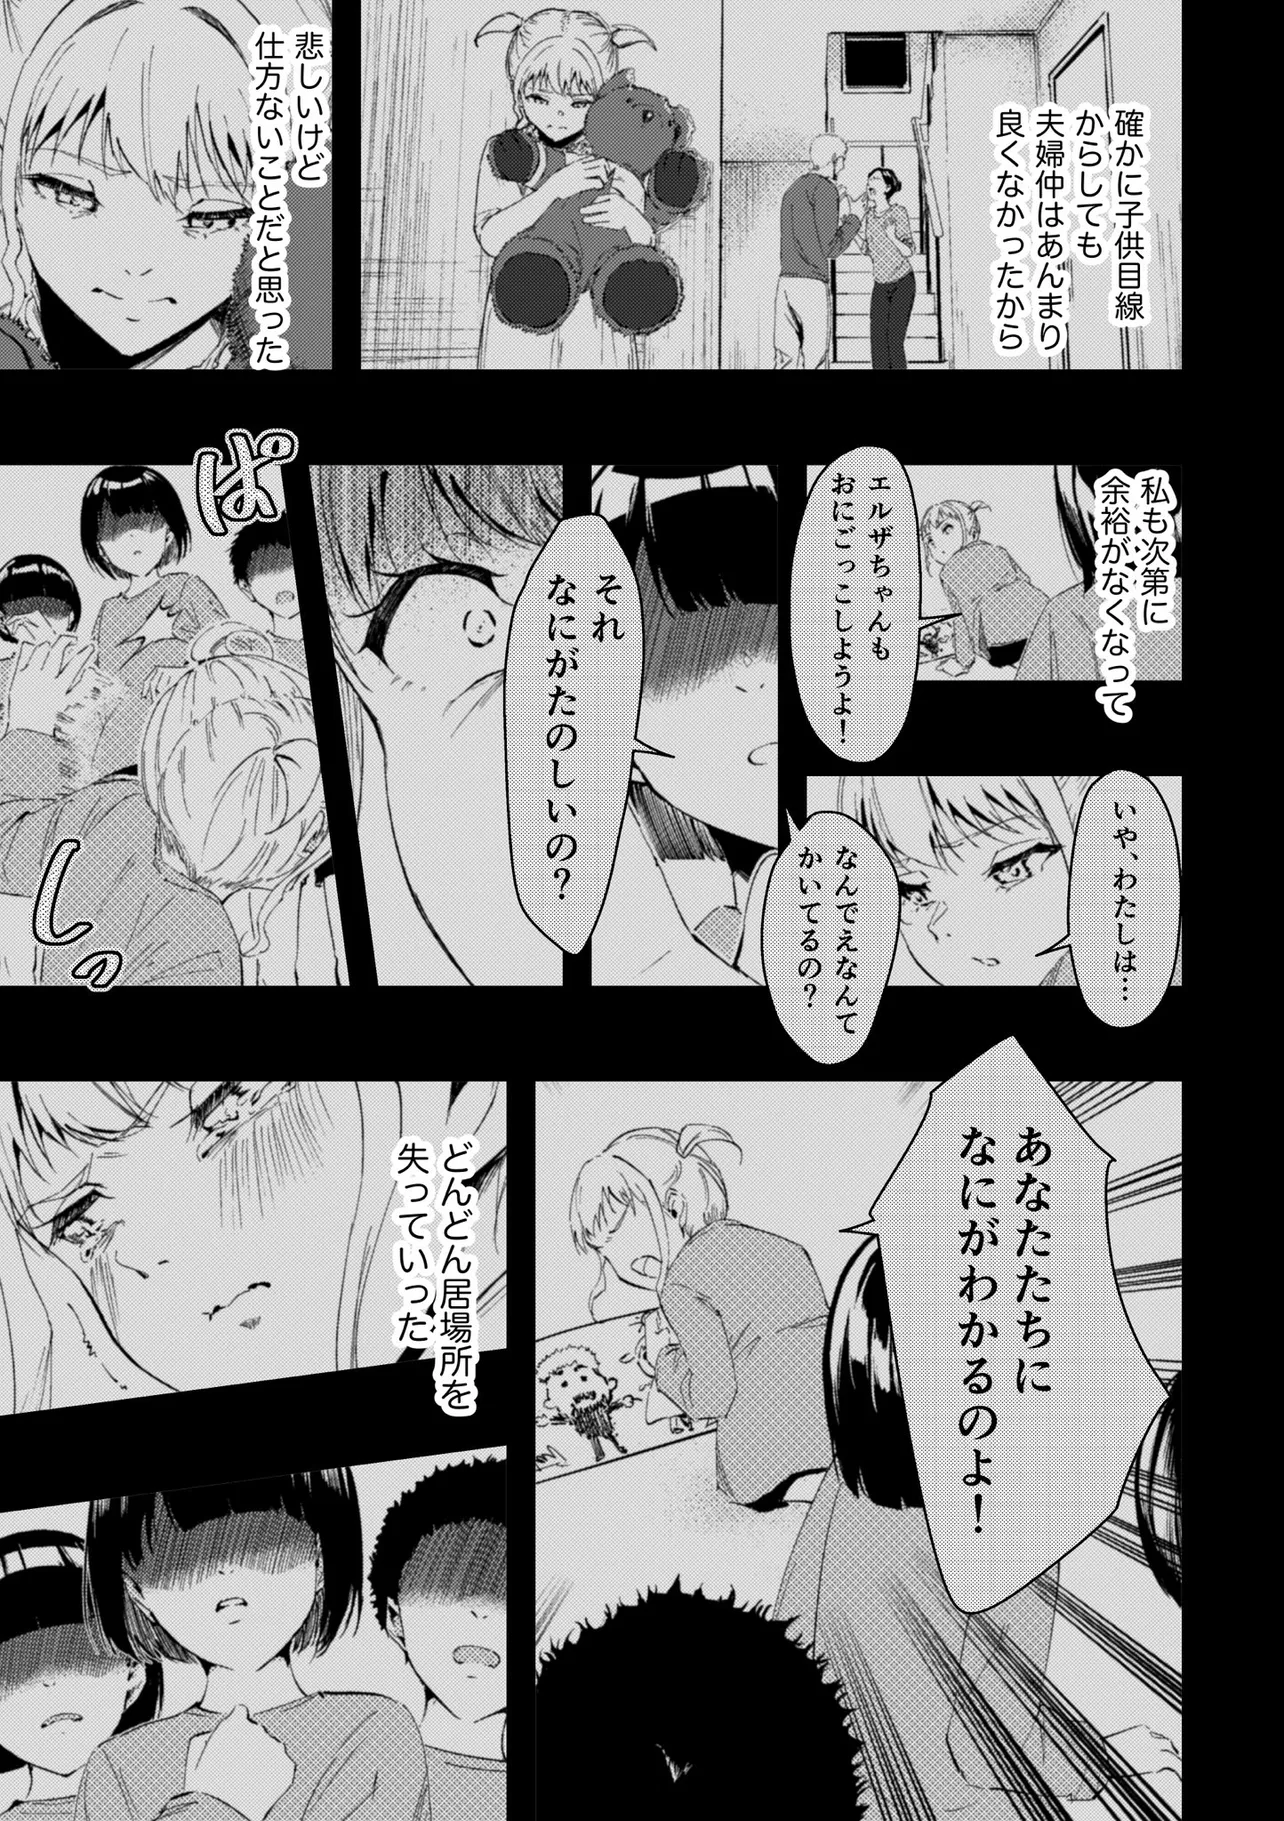 『いじめられっ子のハーフと漫画家を目指す話』(36/71)